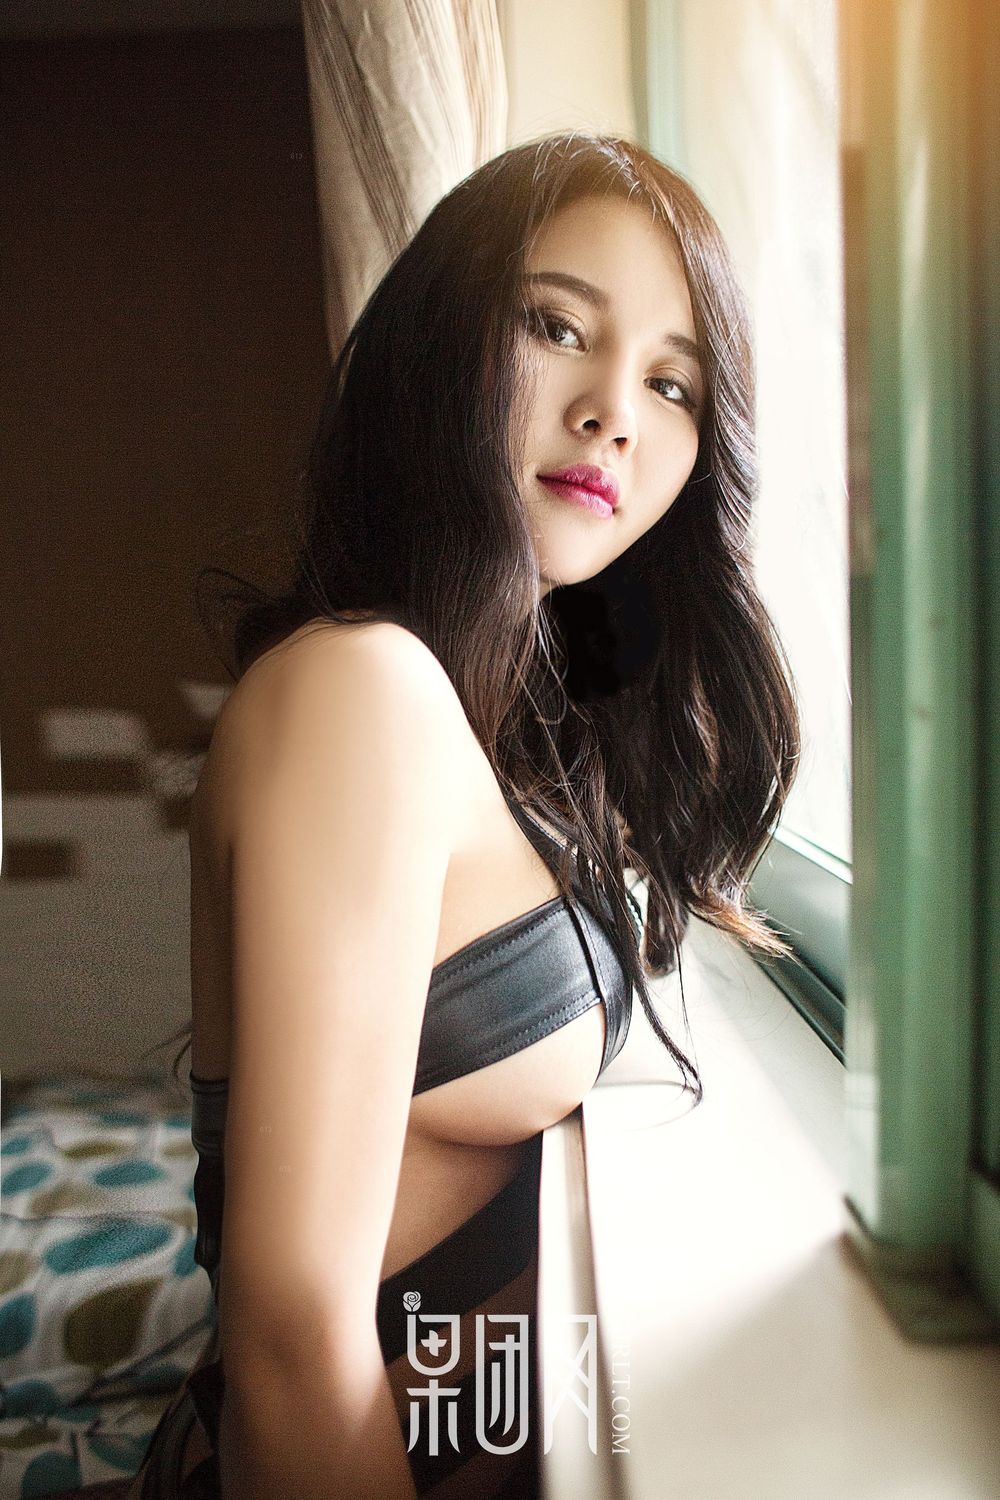 美女模特SukkiQ可以 - 翘臀奶霸+湿身诱惑虐恋写真